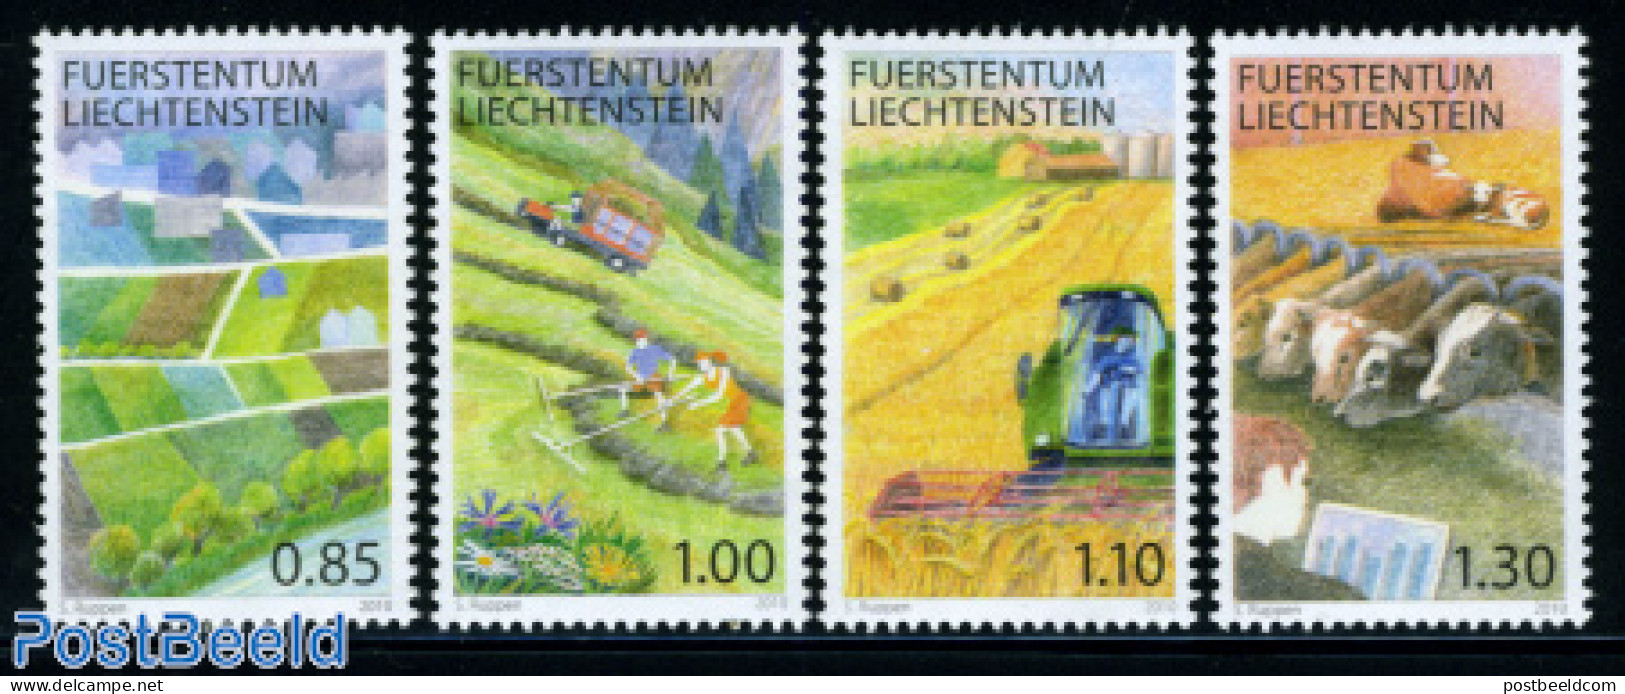 Liechtenstein 2010 Agriculture In Liechtenstein 4v, Mint NH, Nature - Various - Cattle - Agriculture - Unused Stamps